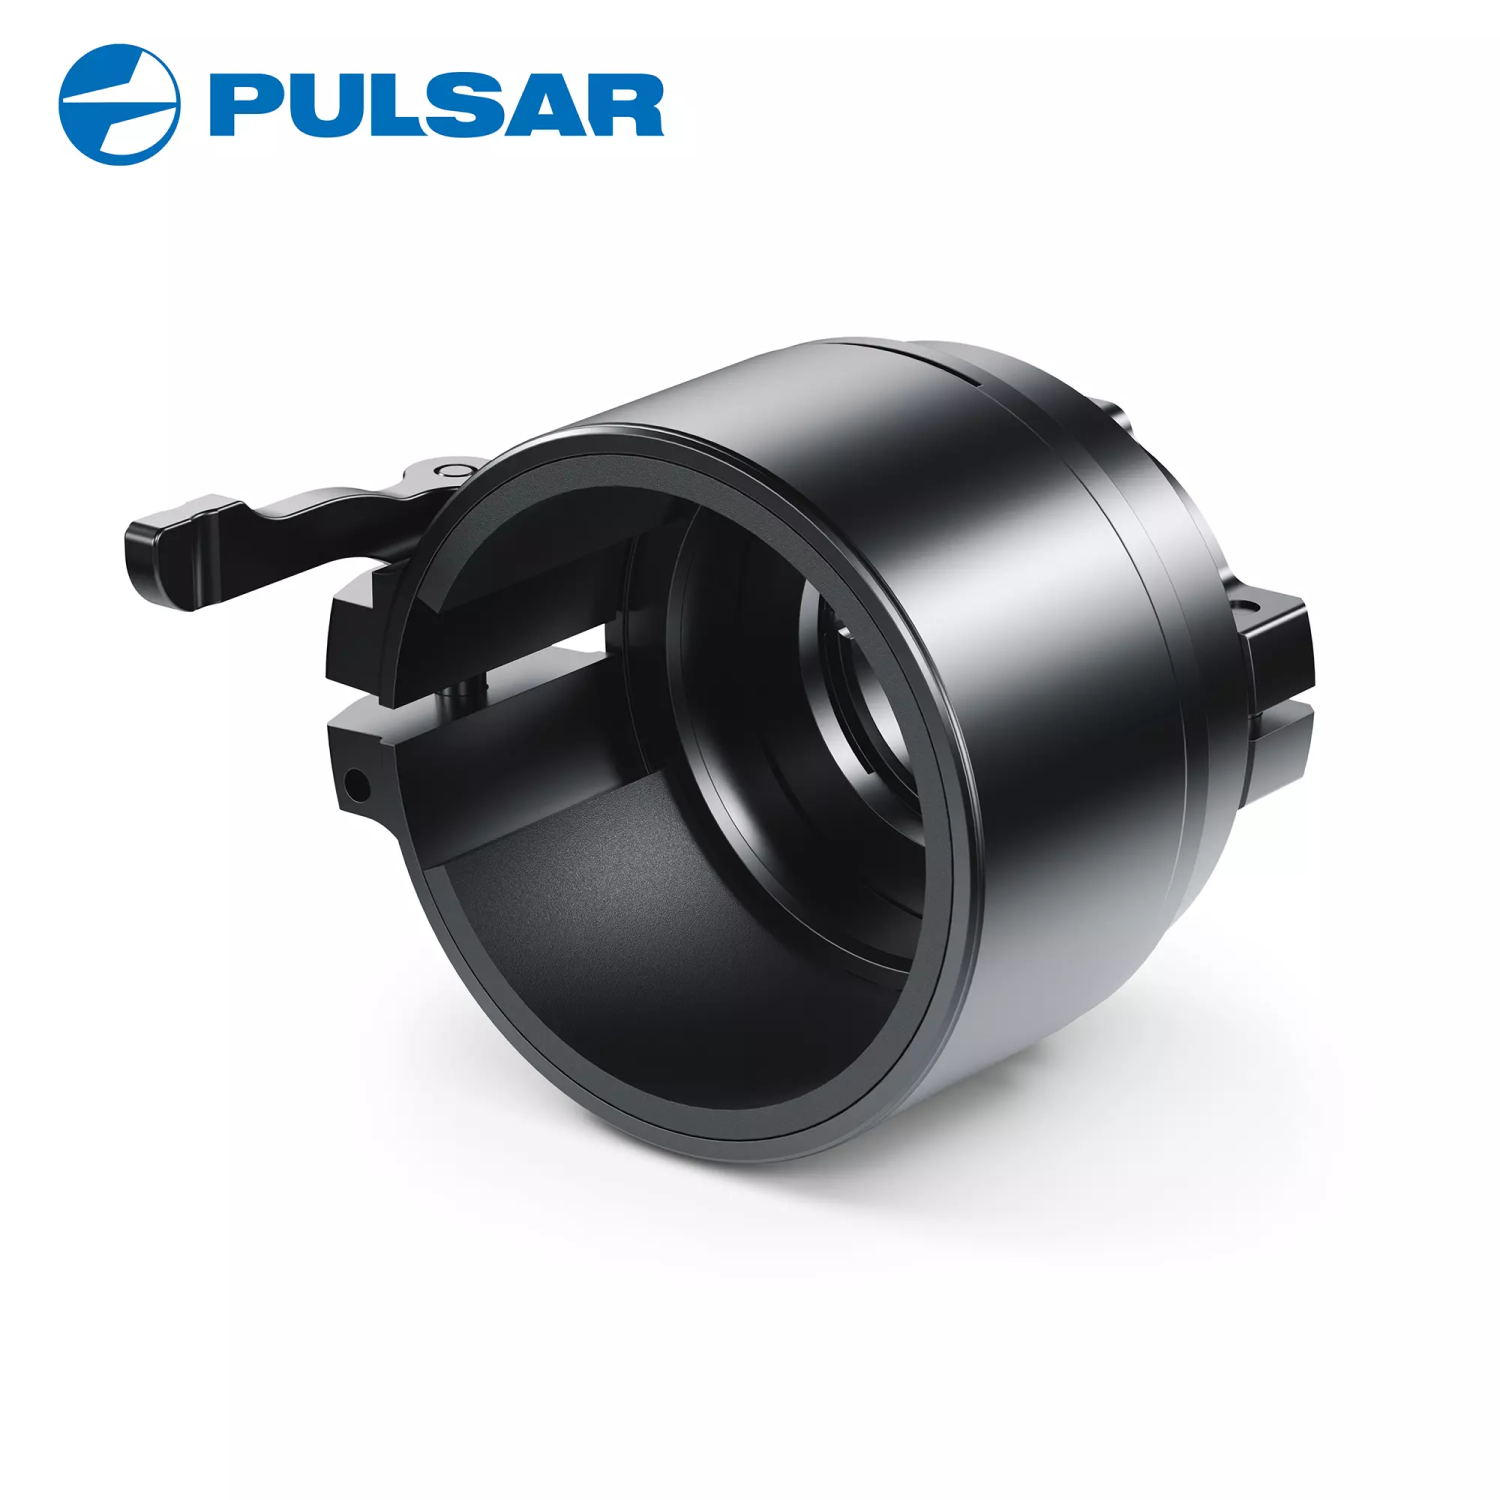 Pulsar PSP-50 Adapter Ring